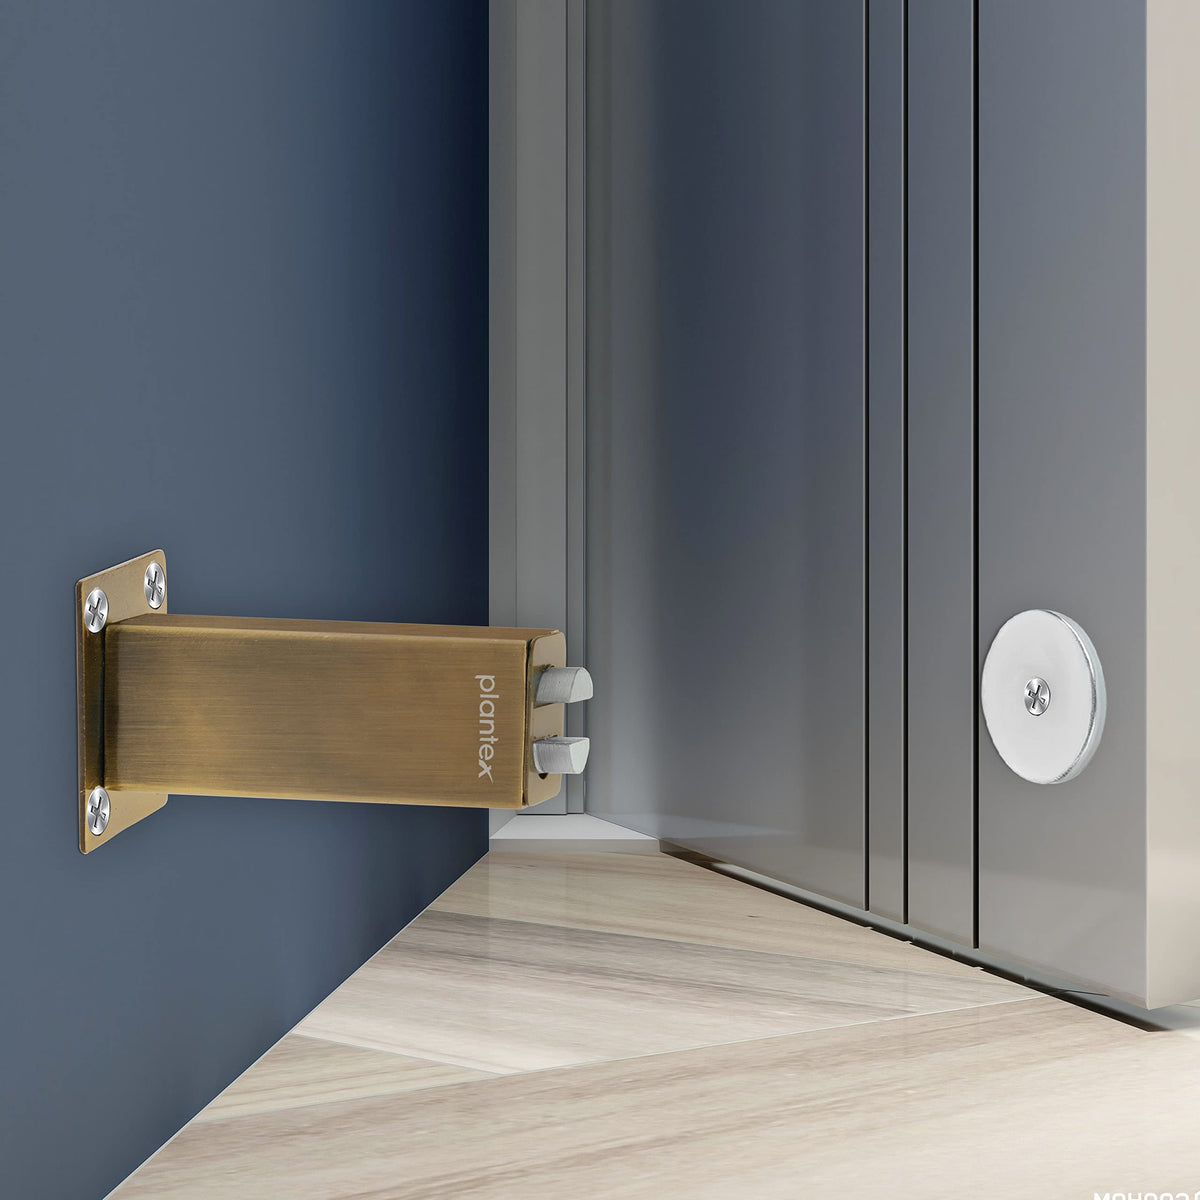 Plantex Stainless Steel 3 inch Square Door Magnet/Door Stopper/Door Catcher for Home/Office/Hotel - Pack of 1 (APS-1118-Brass Antique)